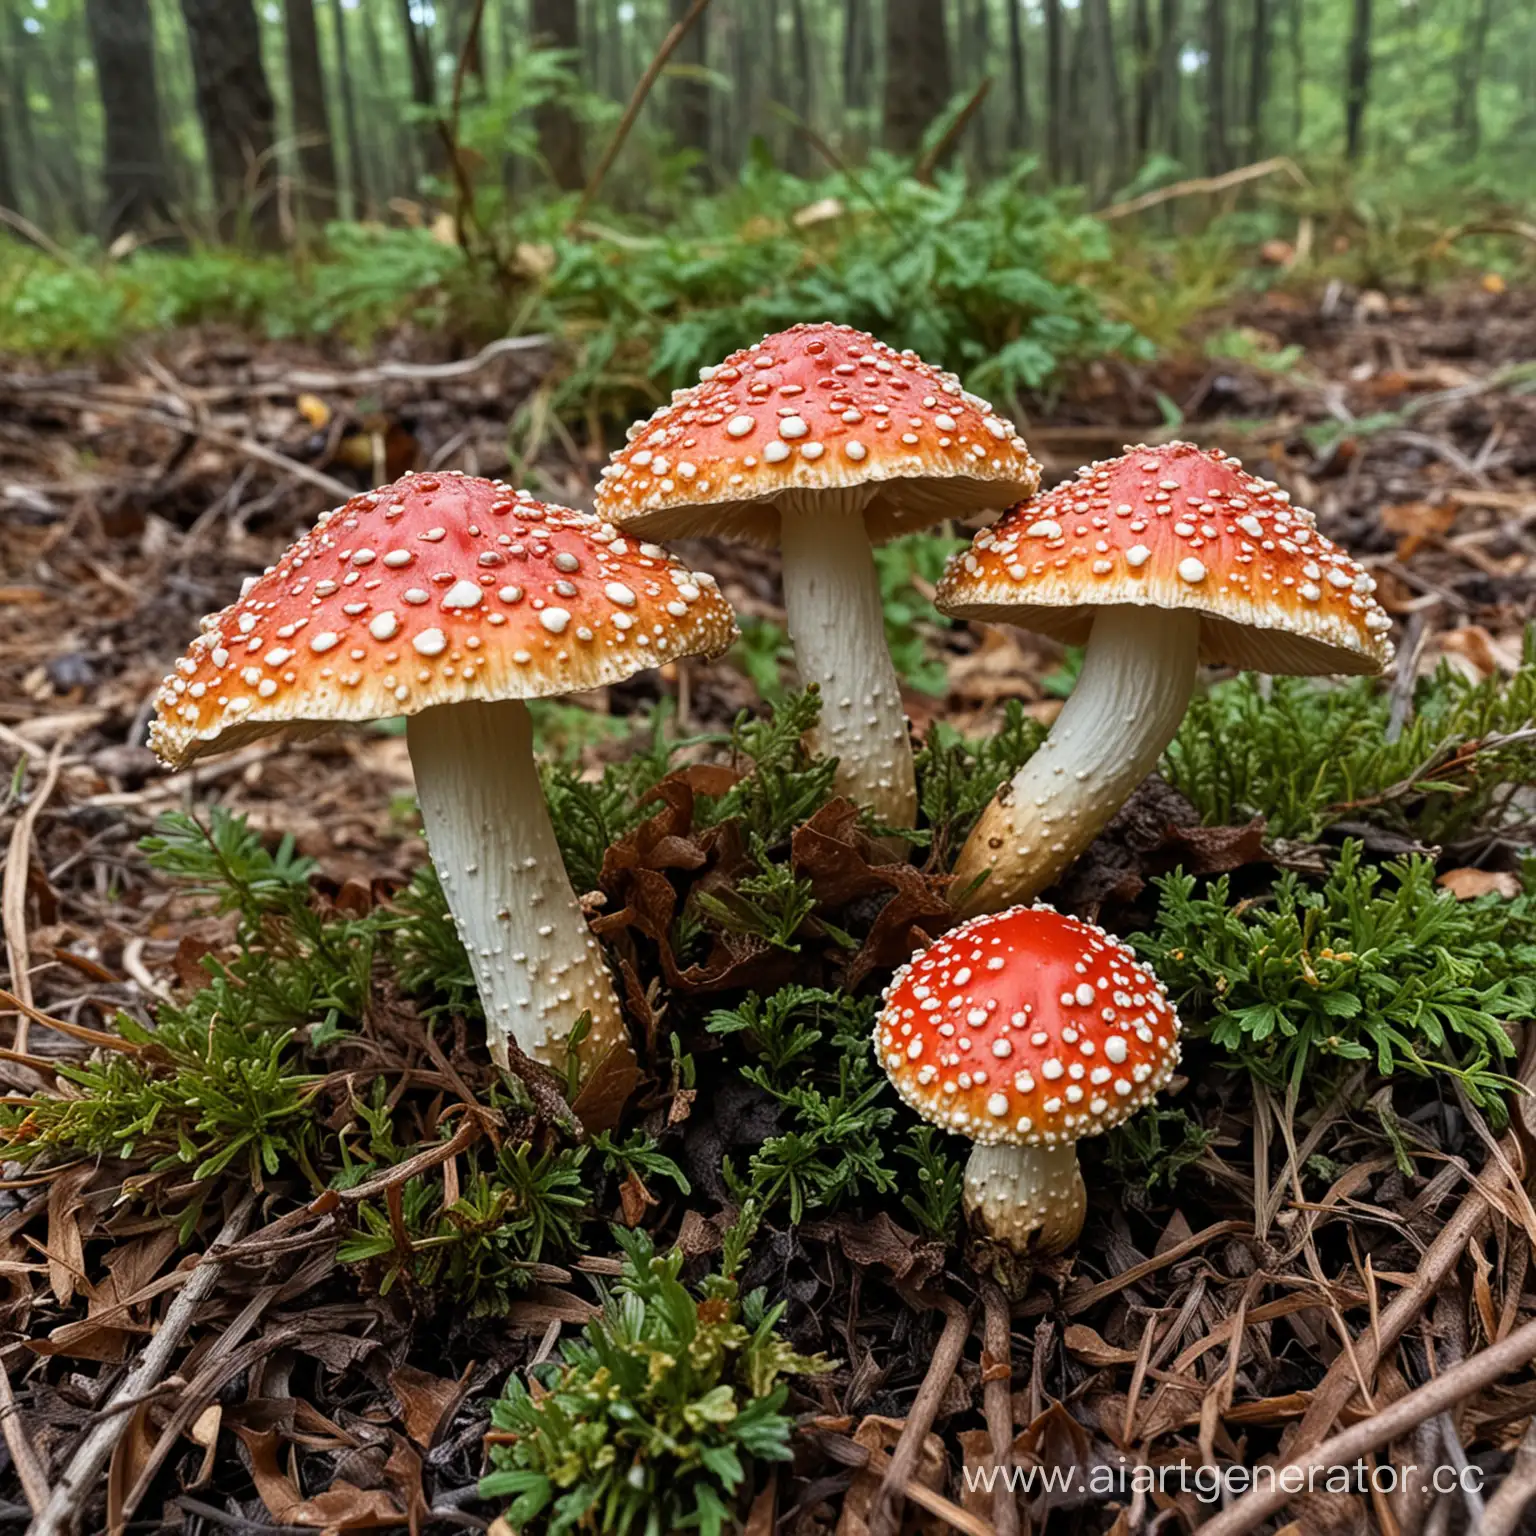 Vibrant-Amanita-Muscaria-Mushroom-Temptation